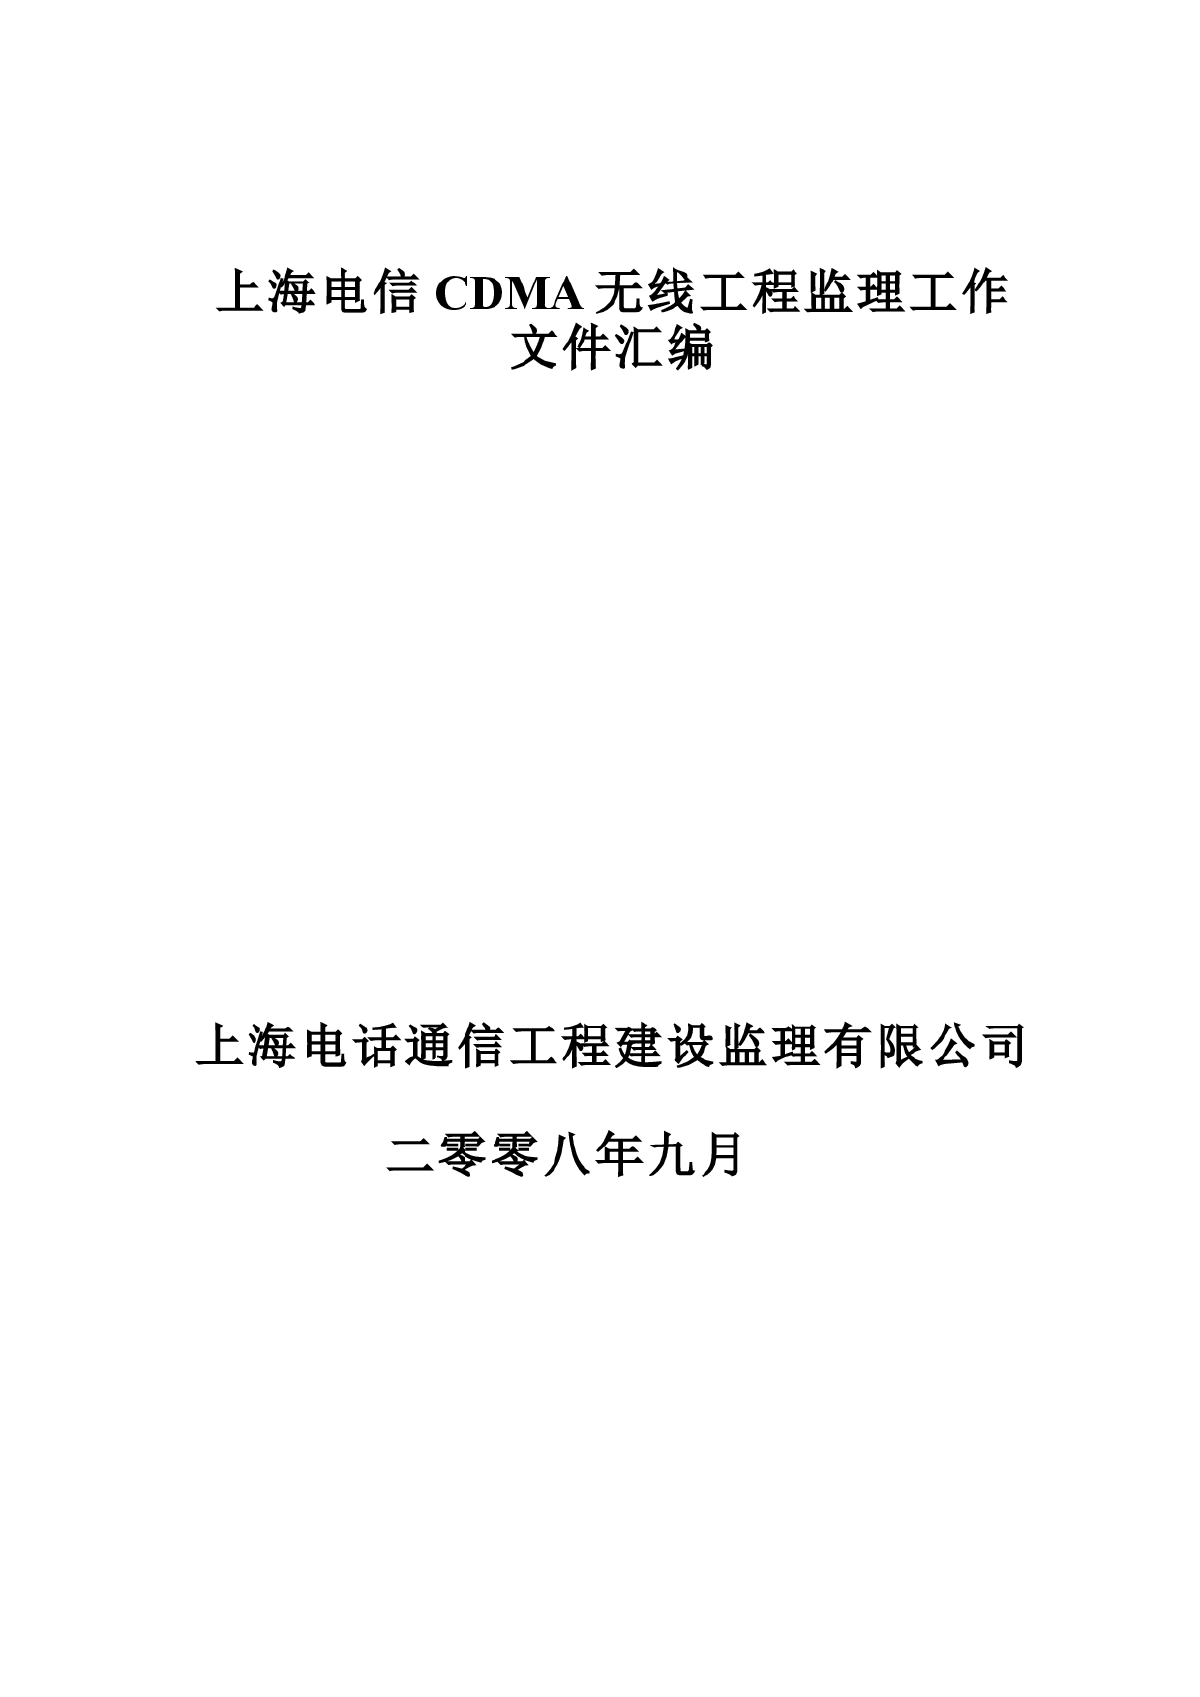 上海电信CDMA文件汇编